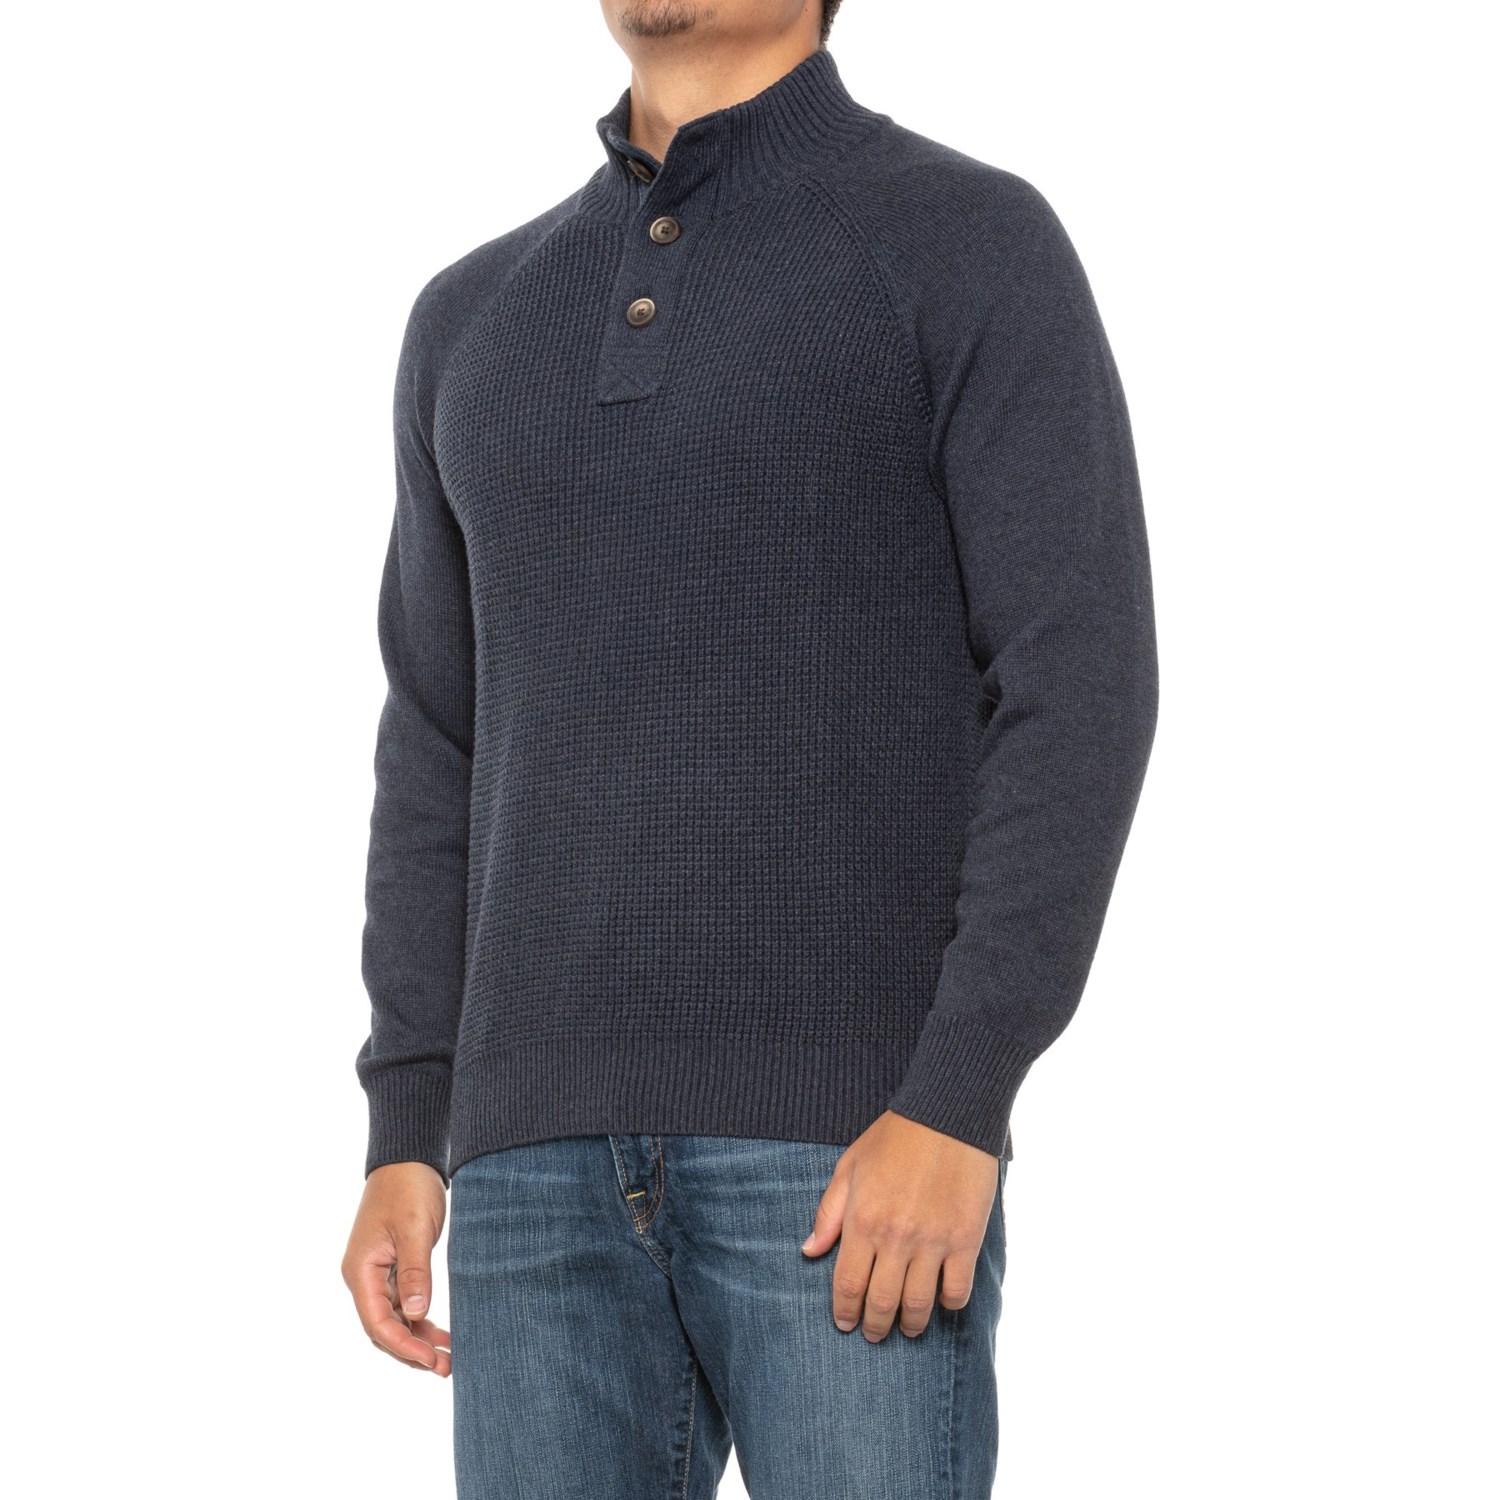 Weatherproof Vintage Melange Button Mock Neck Sweater (For Men) - Save 37%